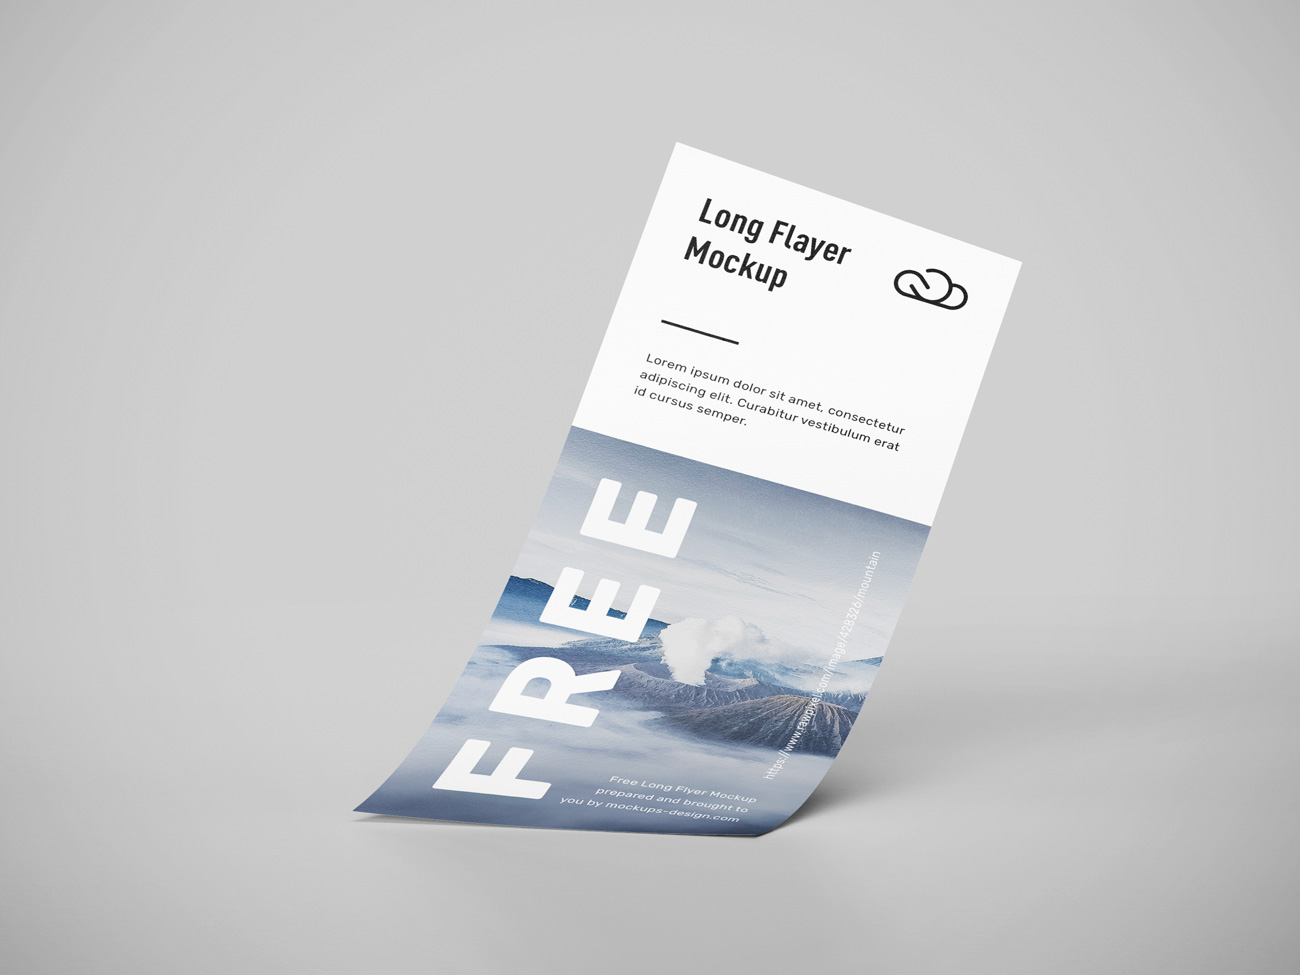 长条传单贴图样机PSD模板素材免费下载 Long flyer